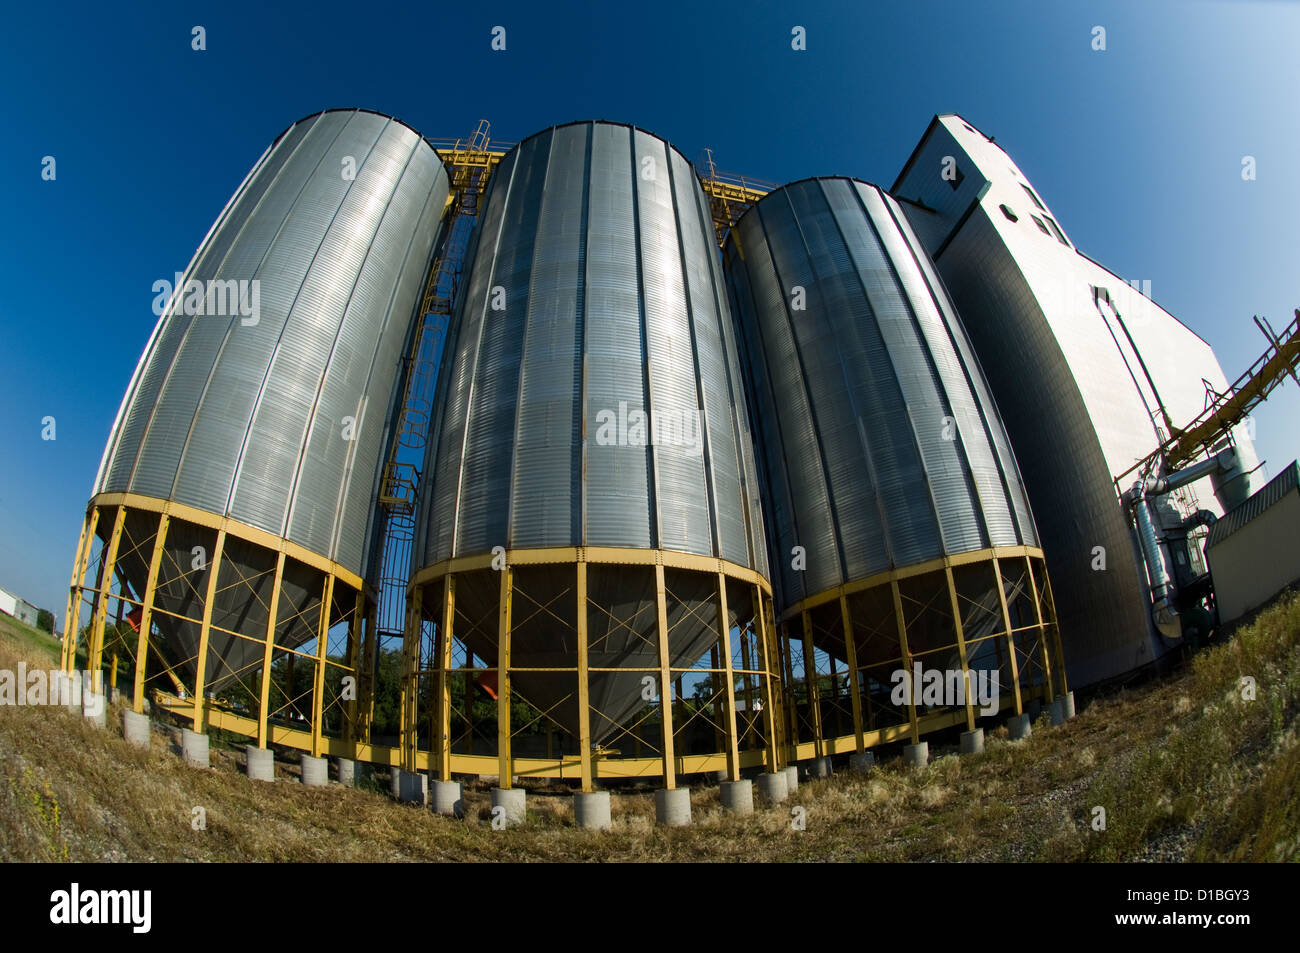 Grain elevators in Souris, Manitoba, Canada. Stock Photo